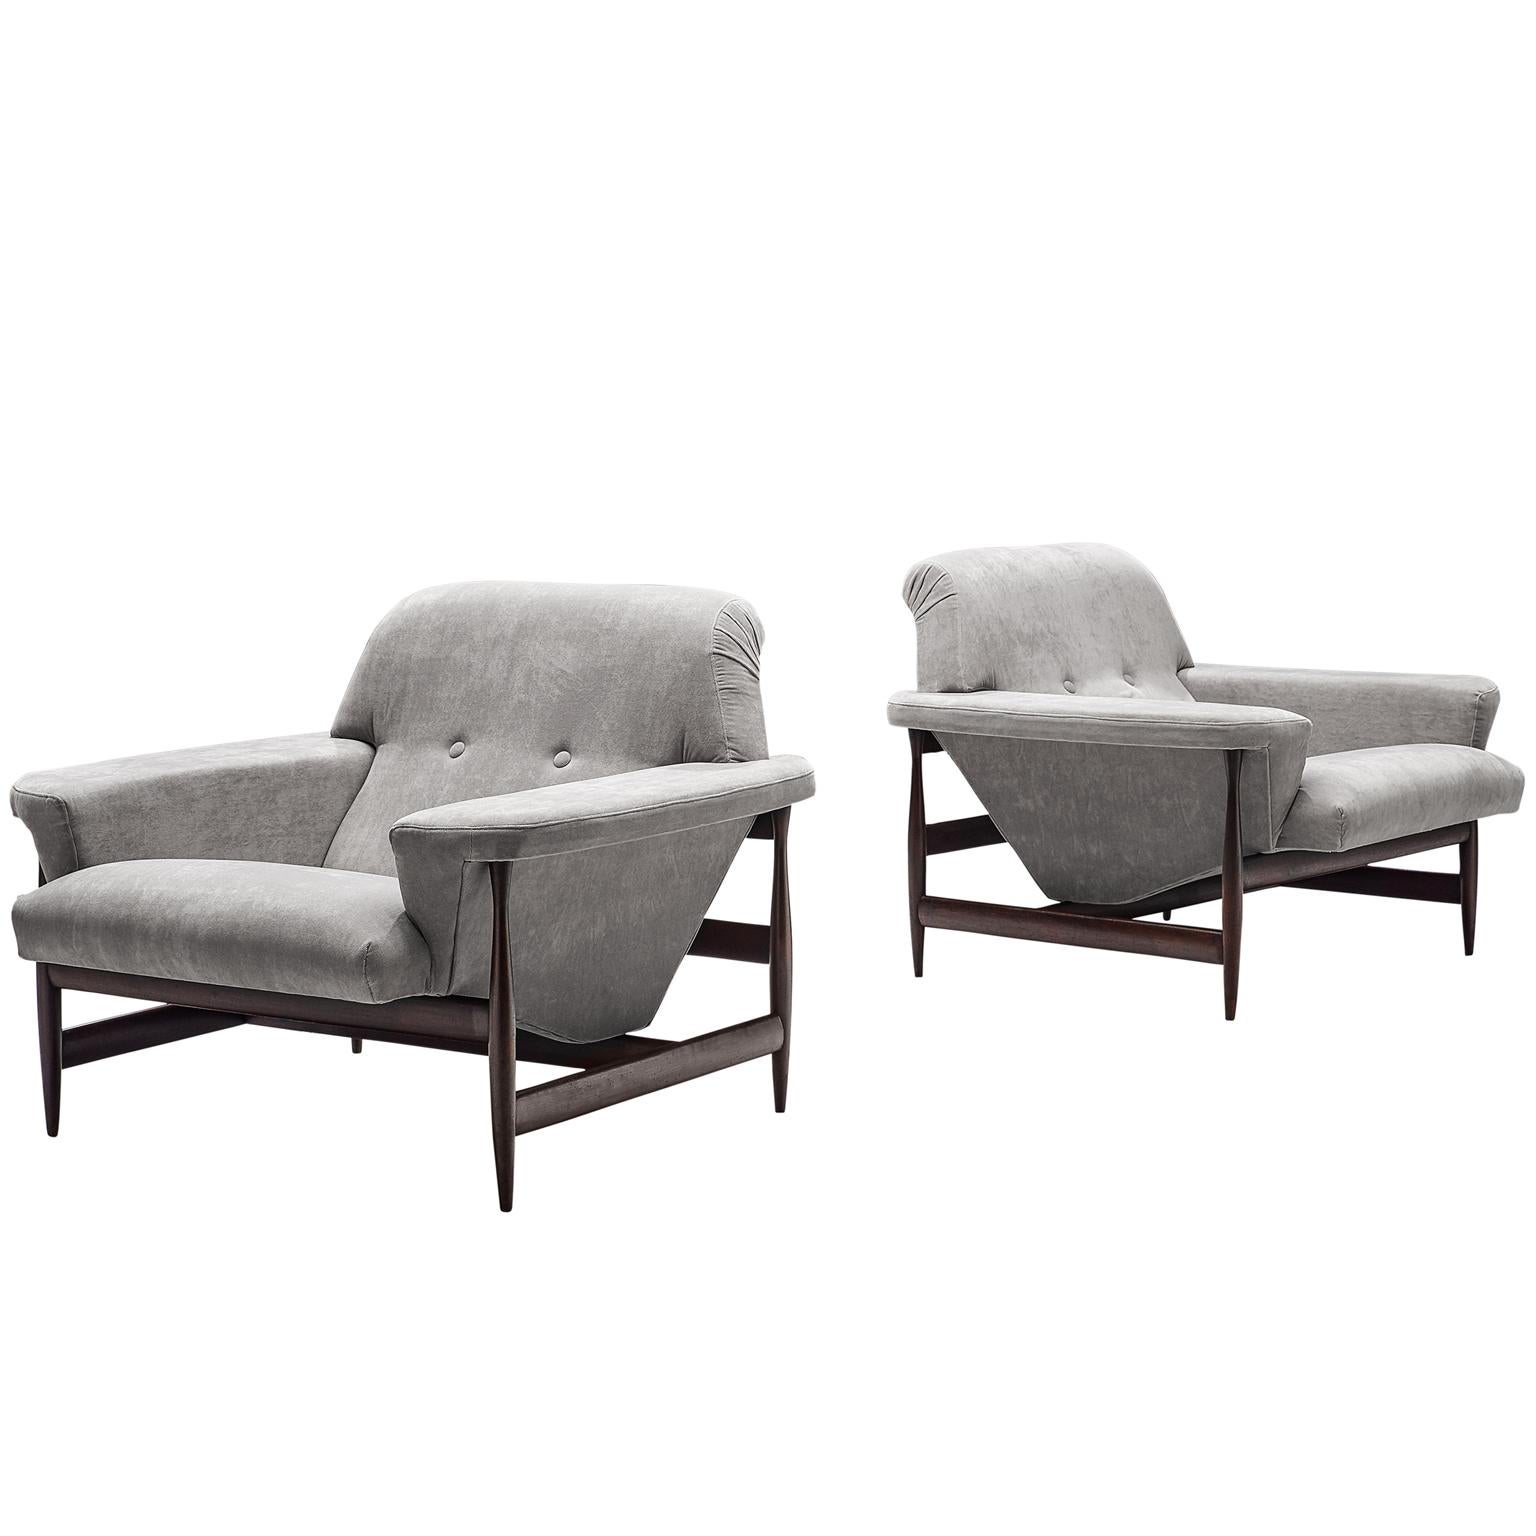 Brazilian Lounge Chairs in Grey Fabric, circa 1960